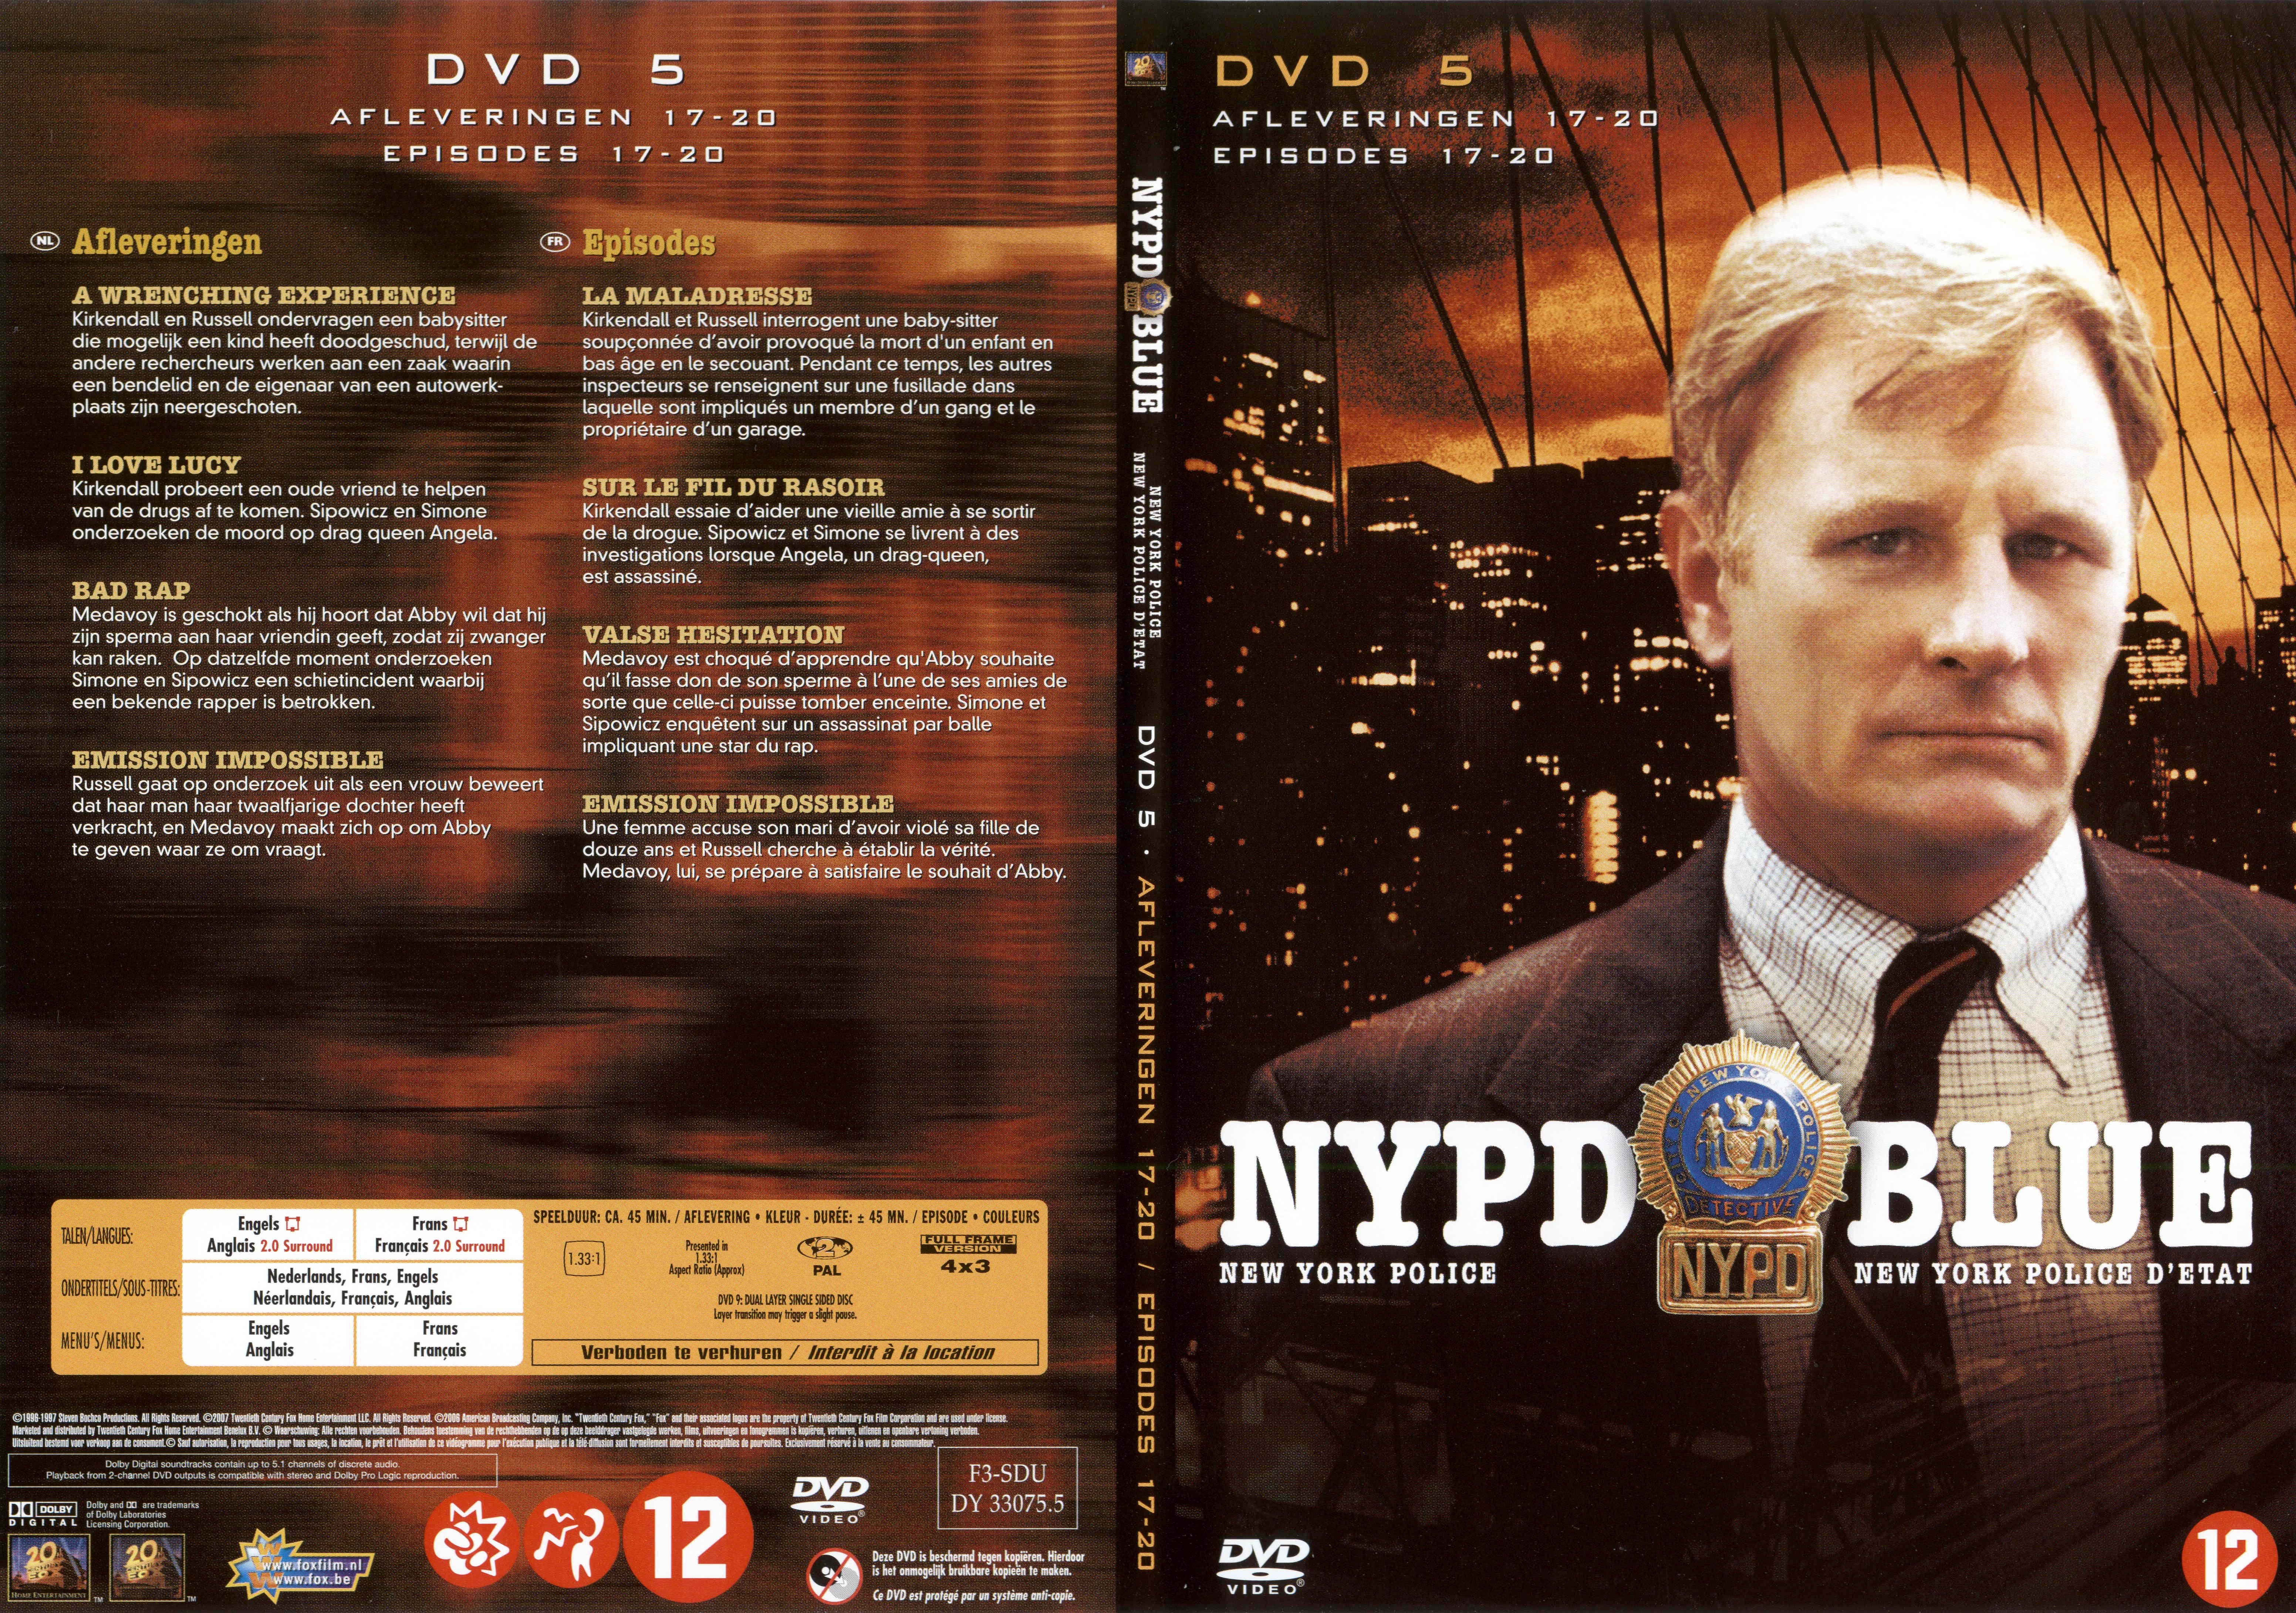 Jaquette DVD NYPD Blue saison 04 dvd 05